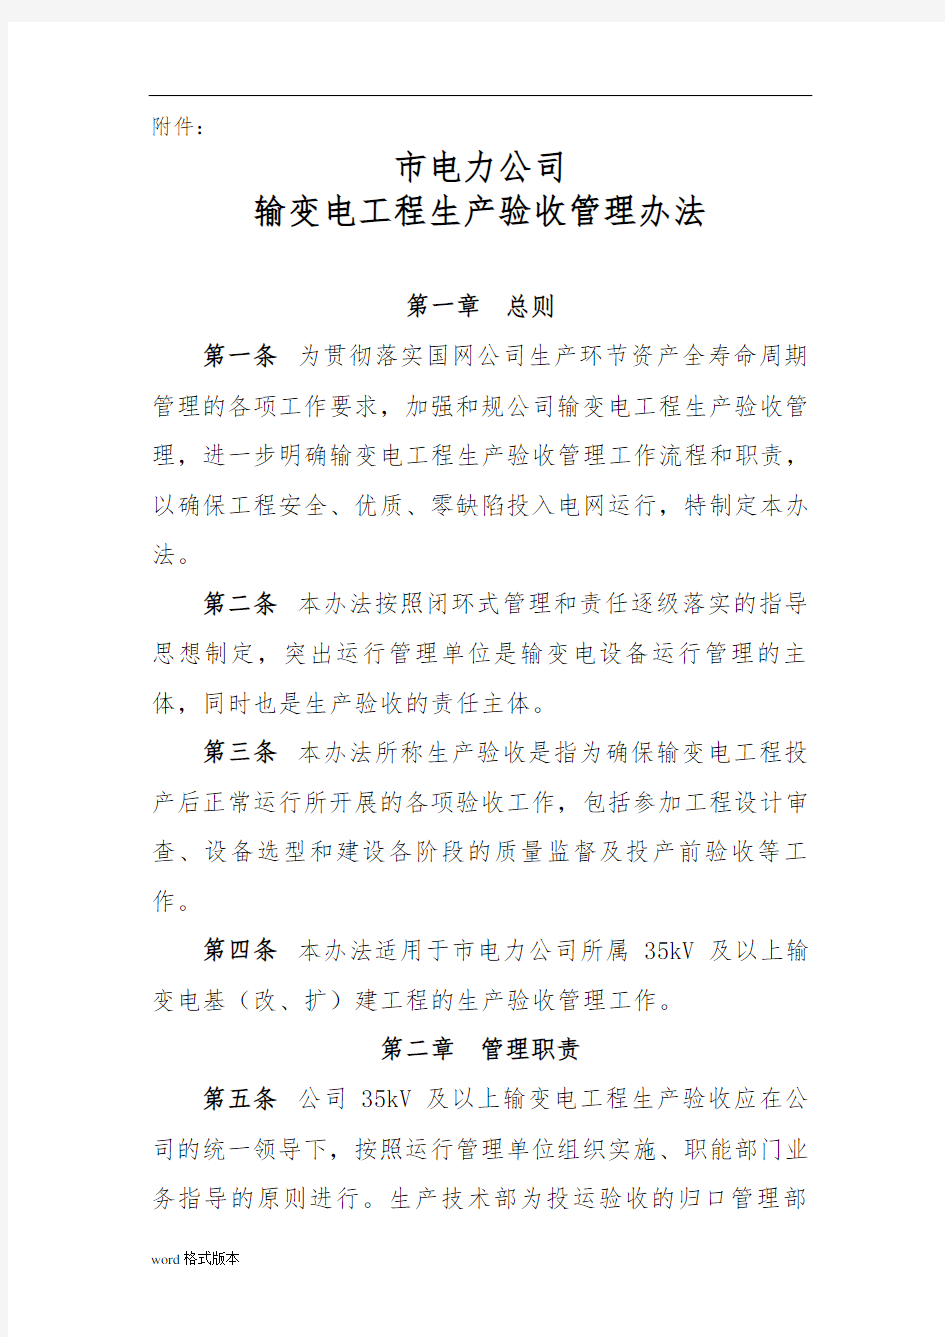 北京电力公司输变电工程生产验收管理办法